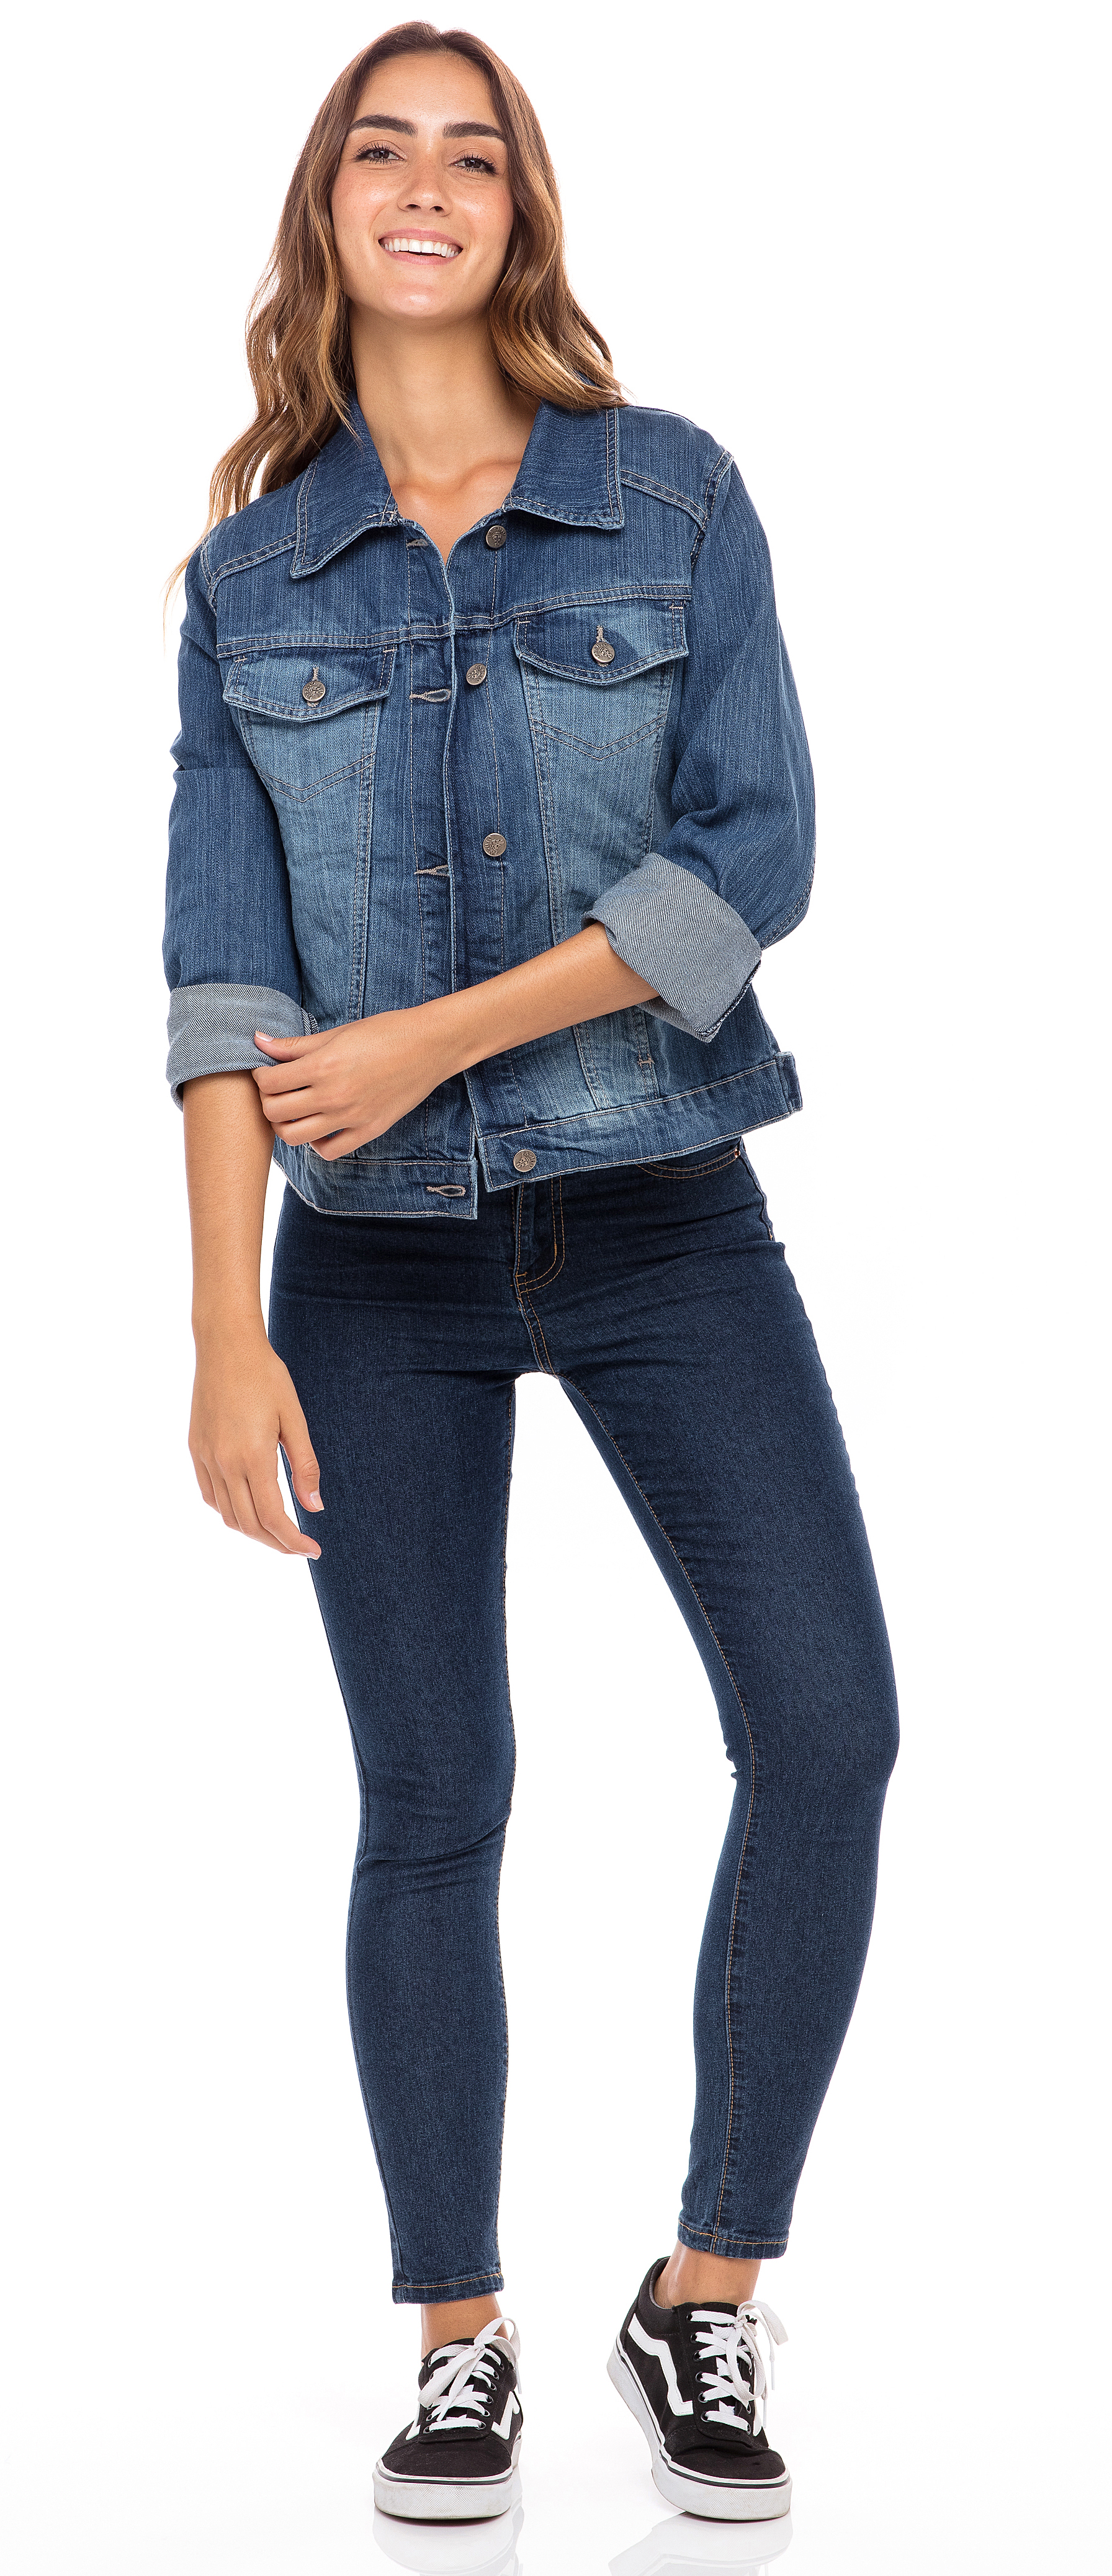 SKYLINEWEARS Women Denim Jacket Button UP Long Sleeve Ladies Stretch Trucker Jean Jackets - image 3 of 5